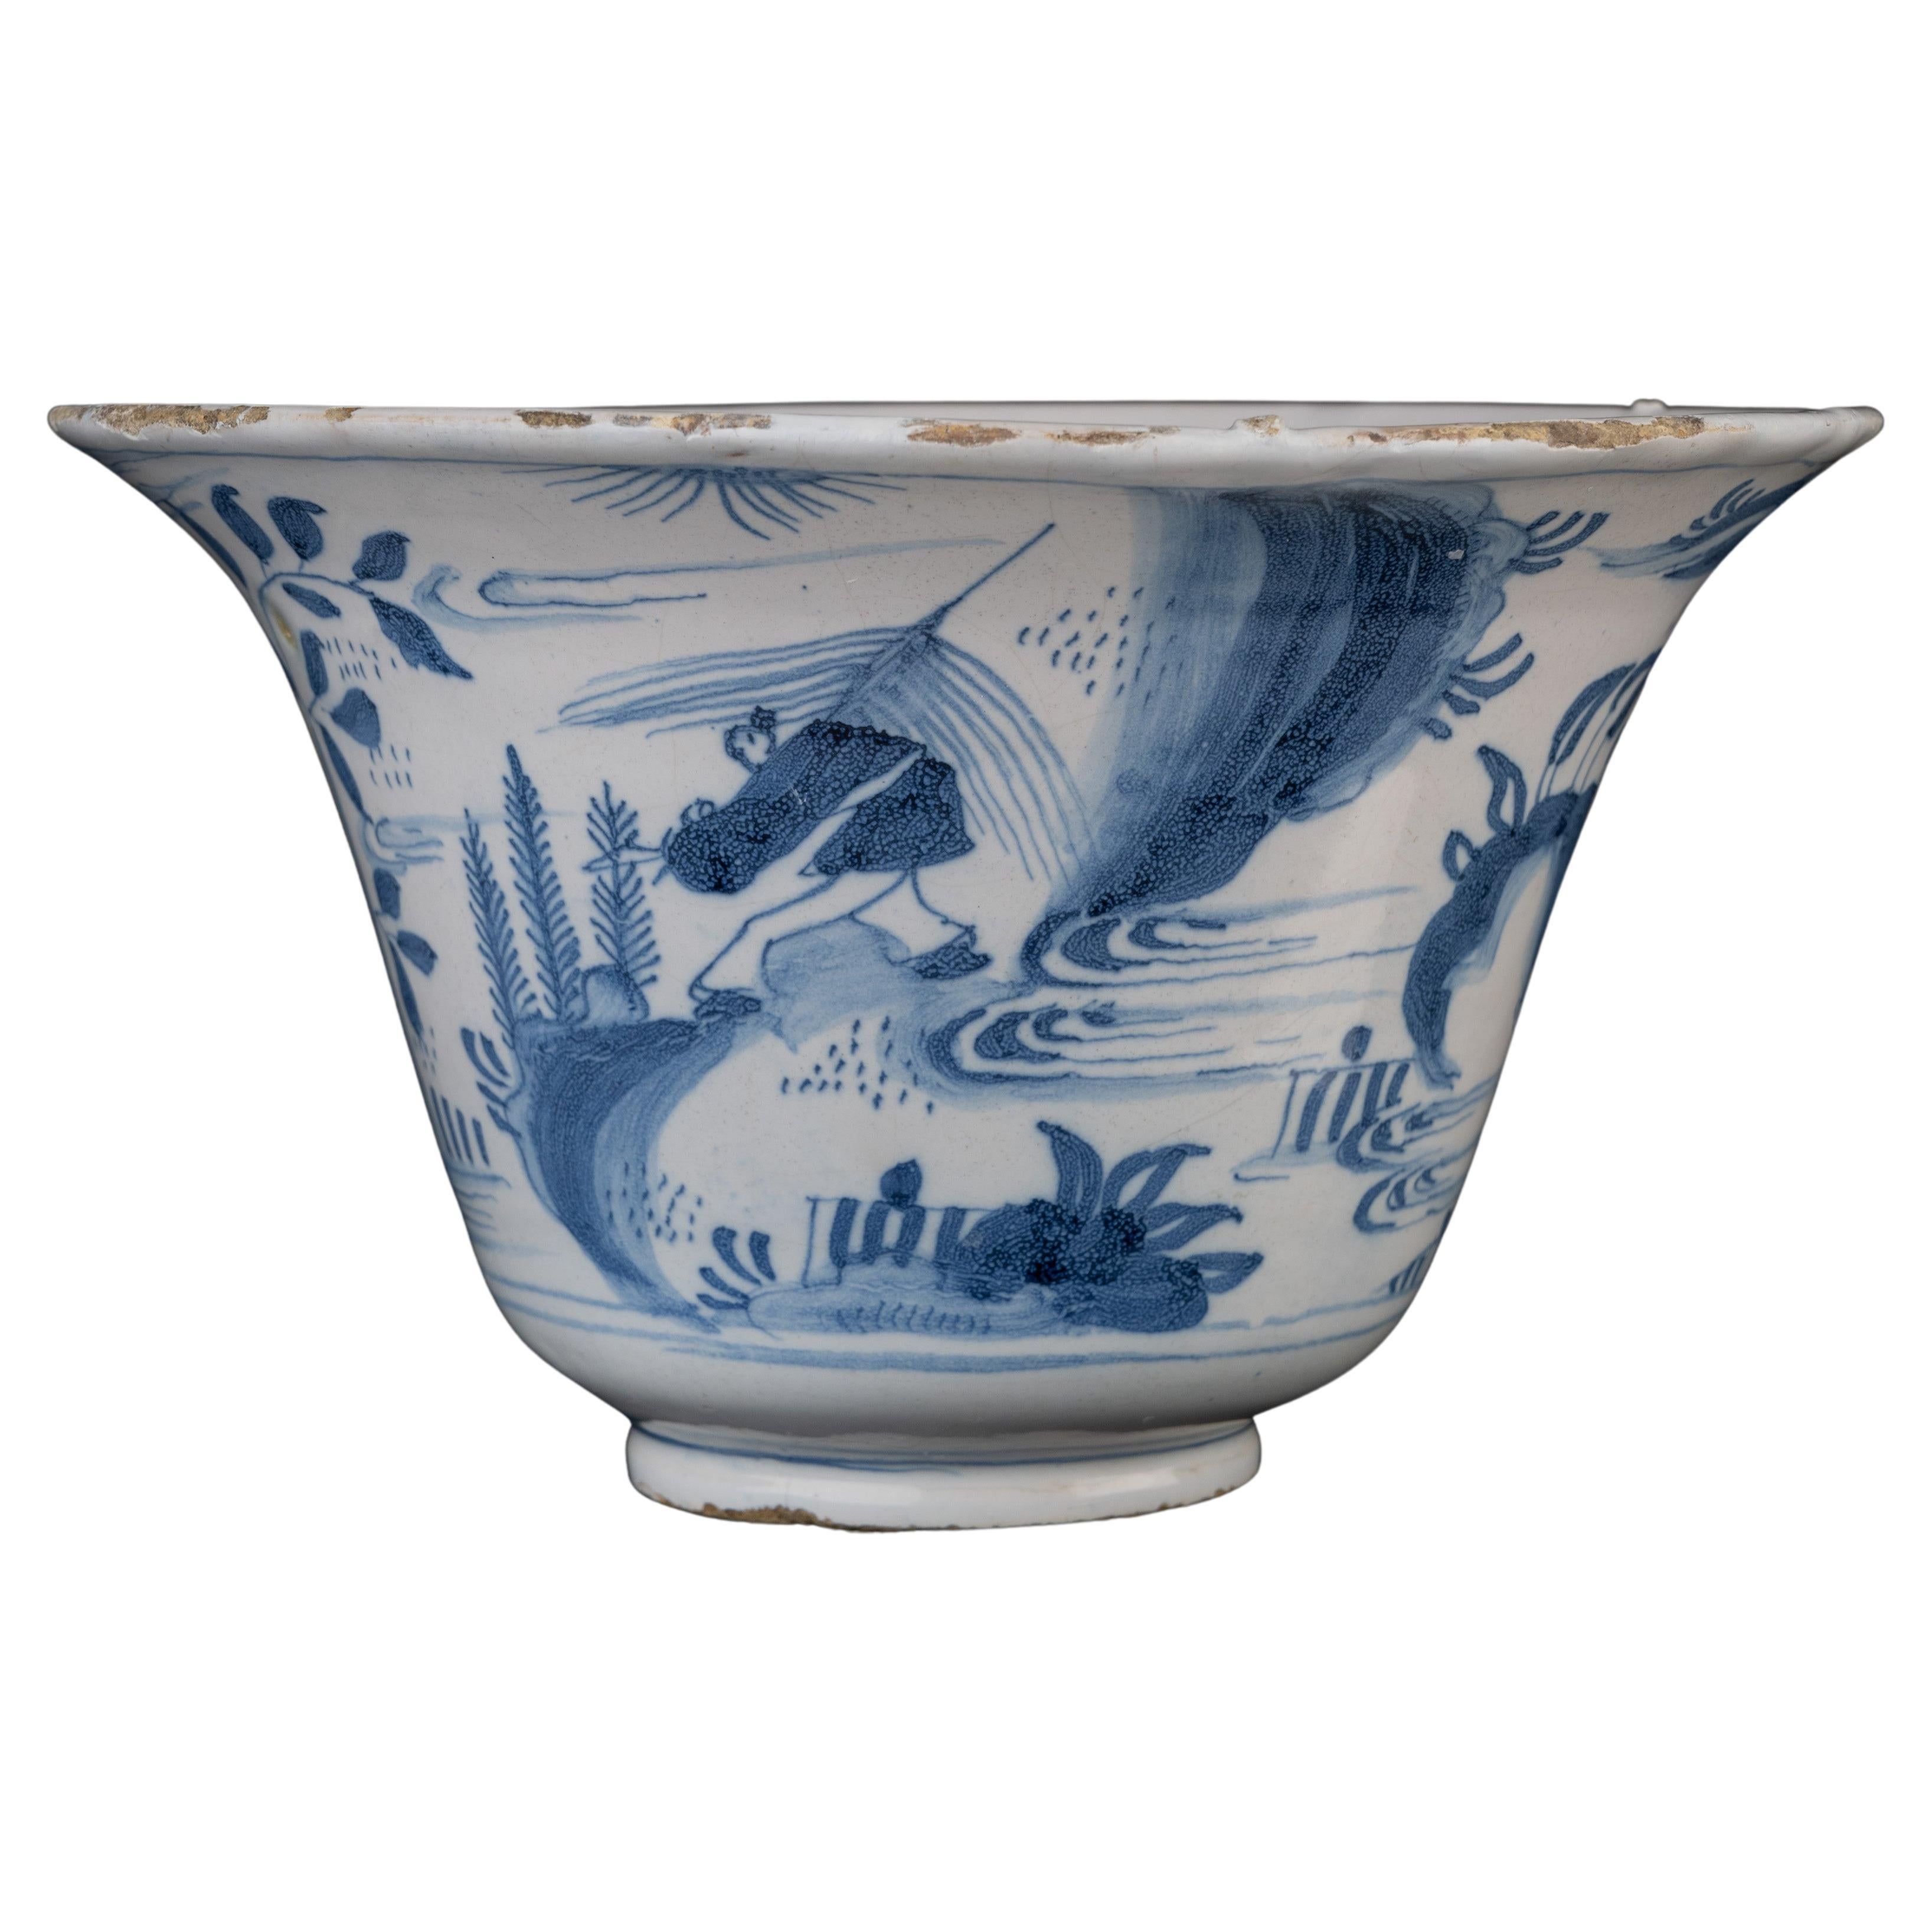 Bol en porcelaine de Delft bleu et blanc de style chinoiserie, 1660-1680